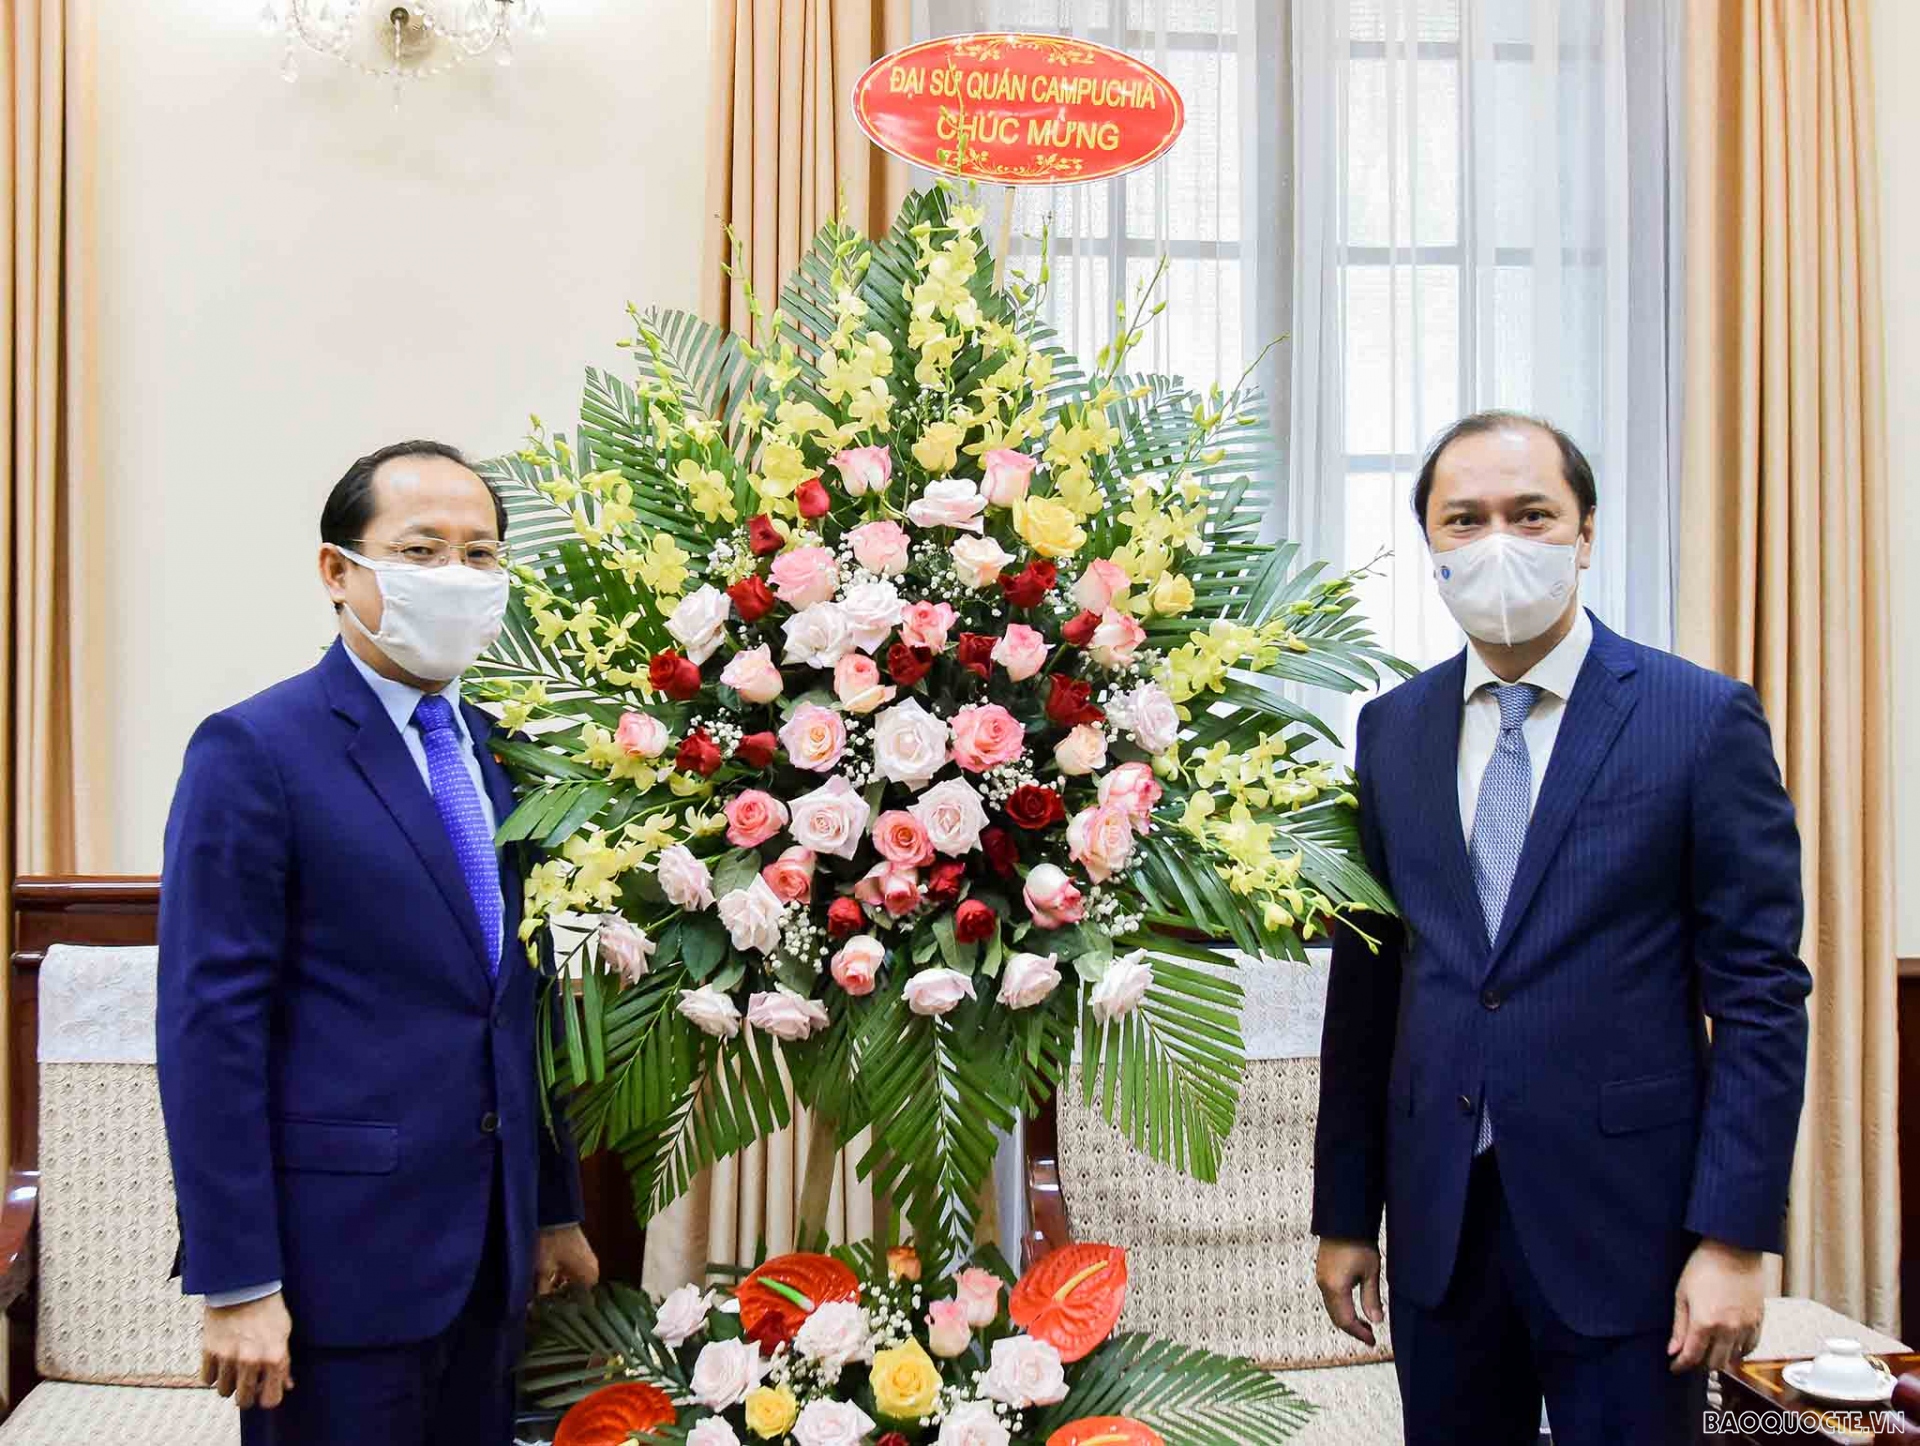 Đại sứ Campuchia: Đại sứ Campuchia tại Việt Nam đóng vai trò quan trọng trong việc tăng cường quan hệ giữa hai nước láng giềng. Cả hai nước đều đánh giá cao các mối quan hệ truyền thống và đang hợp tác tốt về nhiều lĩnh vực. Hãy xem hình ảnh liên quan để cảm nhận sự gần gũi và hợp tác giữa Việt Nam và Campuchia.